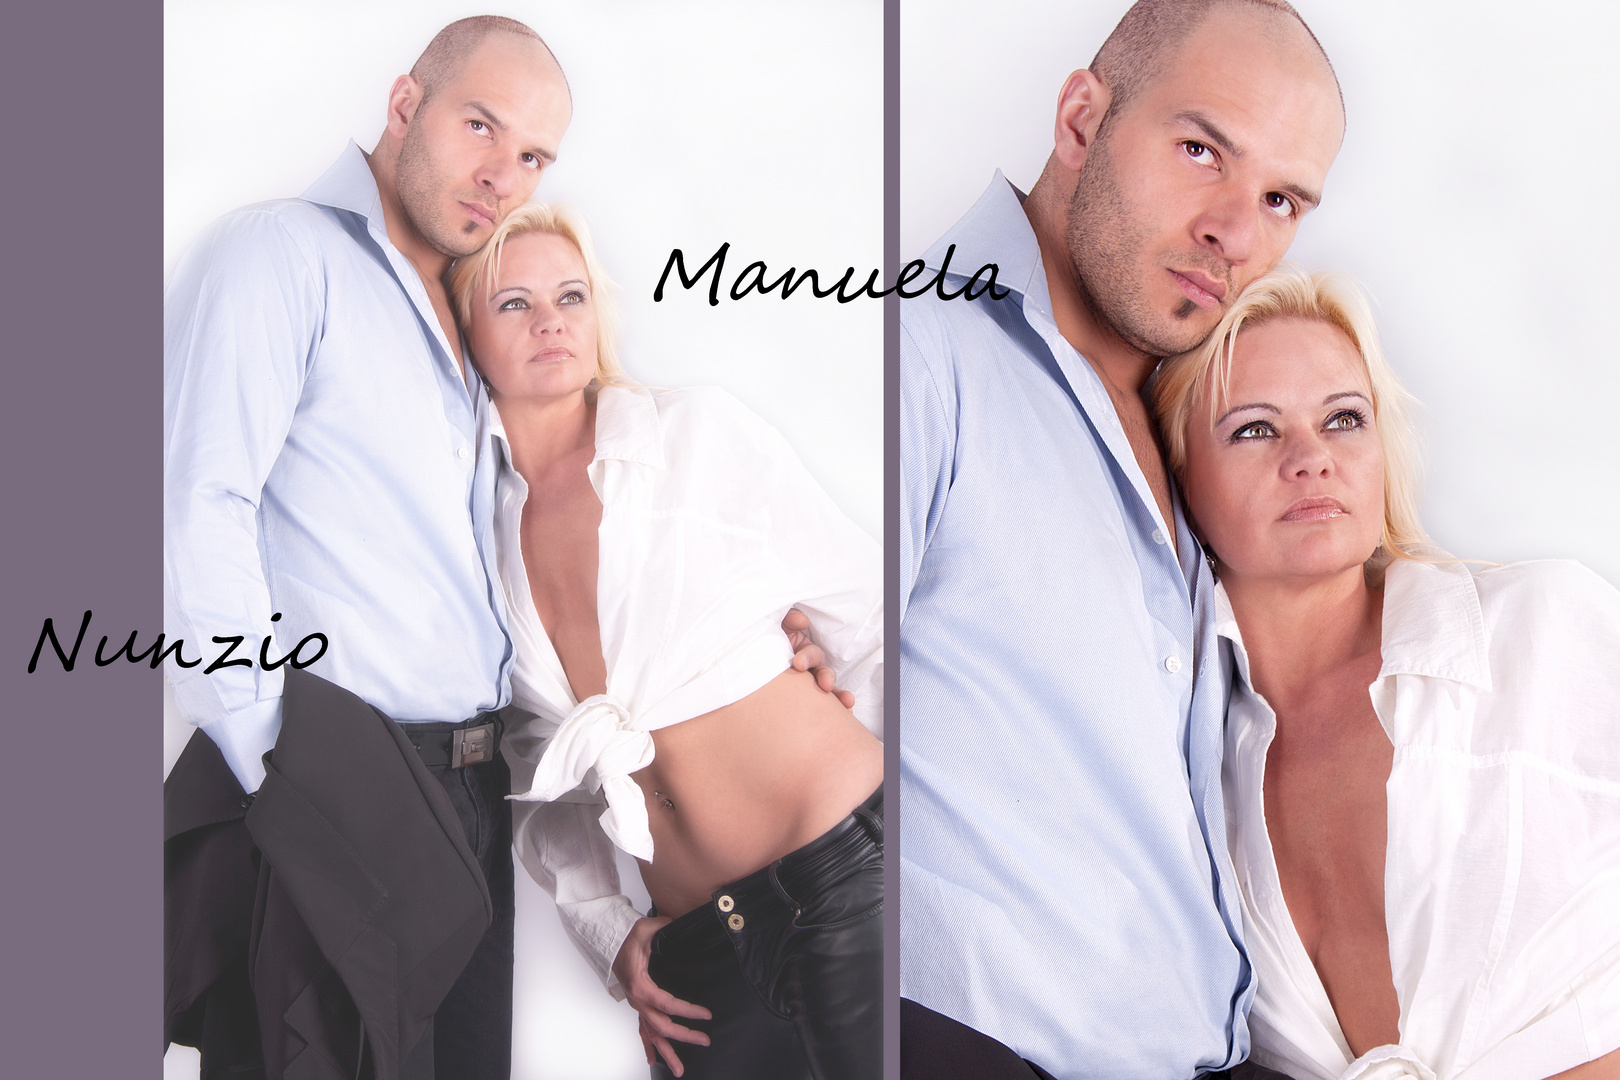 Manuela und Nunzio